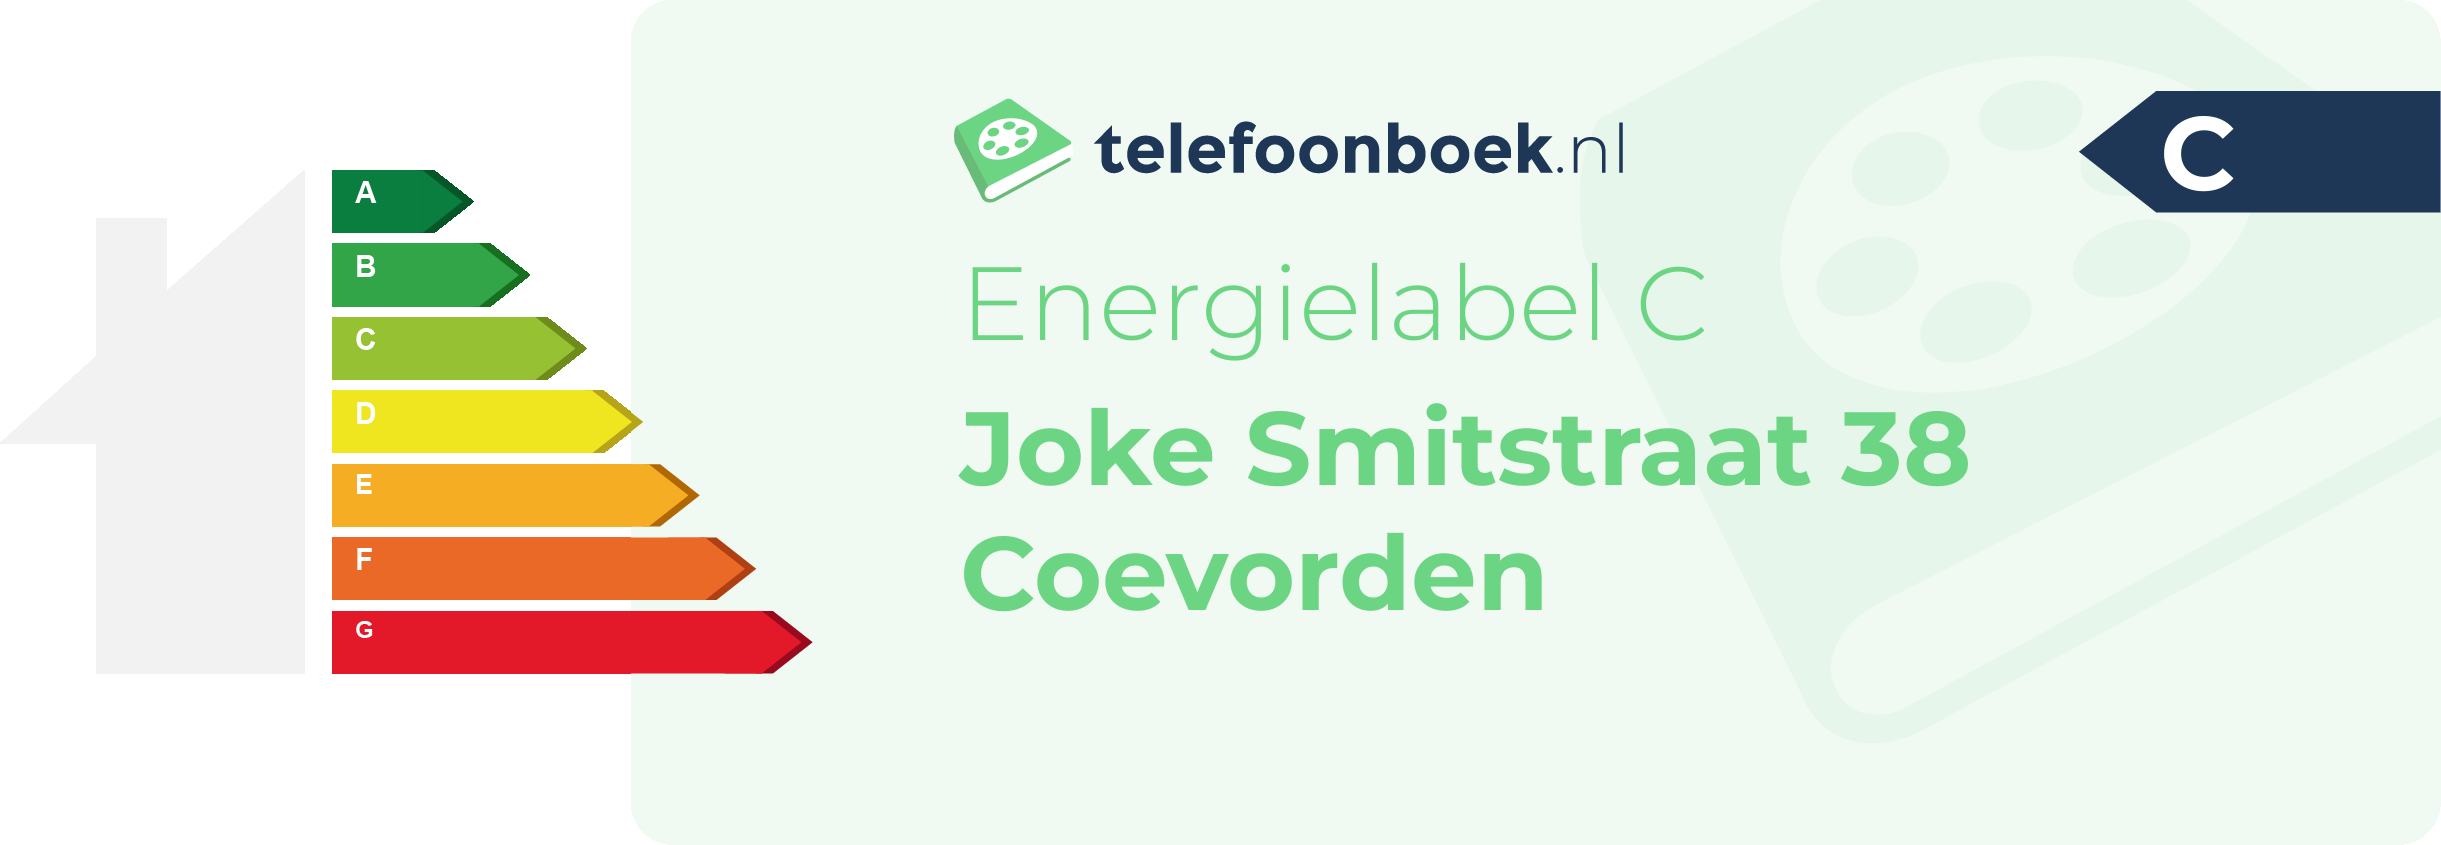 Energielabel Joke Smitstraat 38 Coevorden